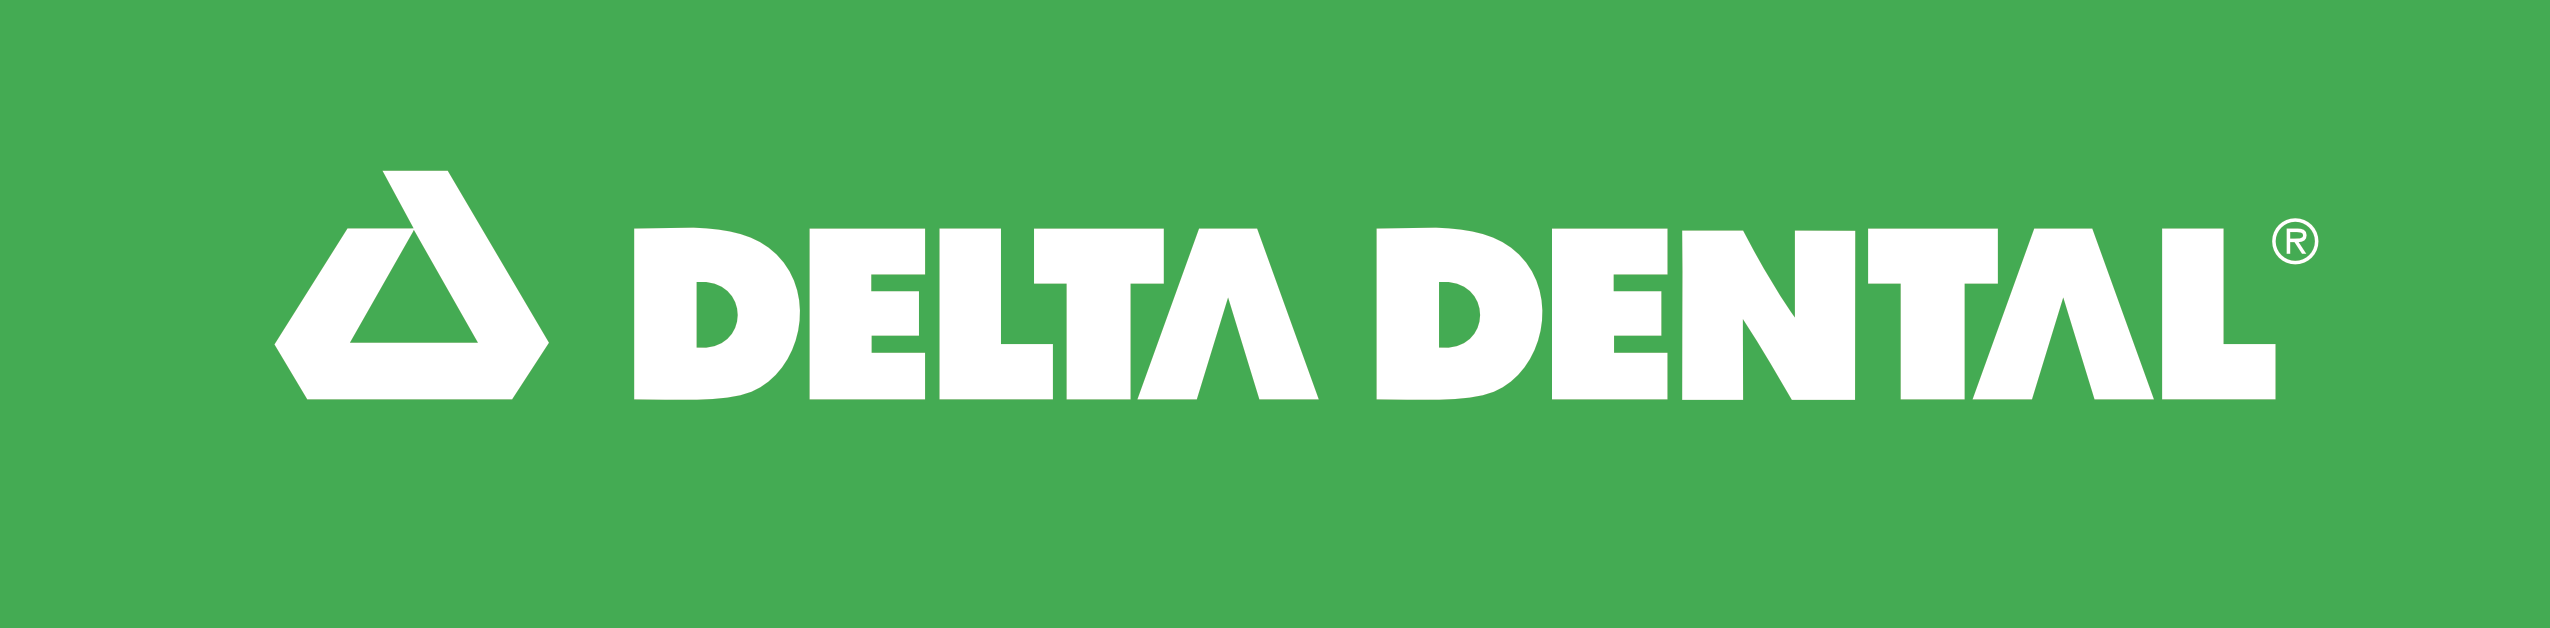 Delta Dental Logo boxed green